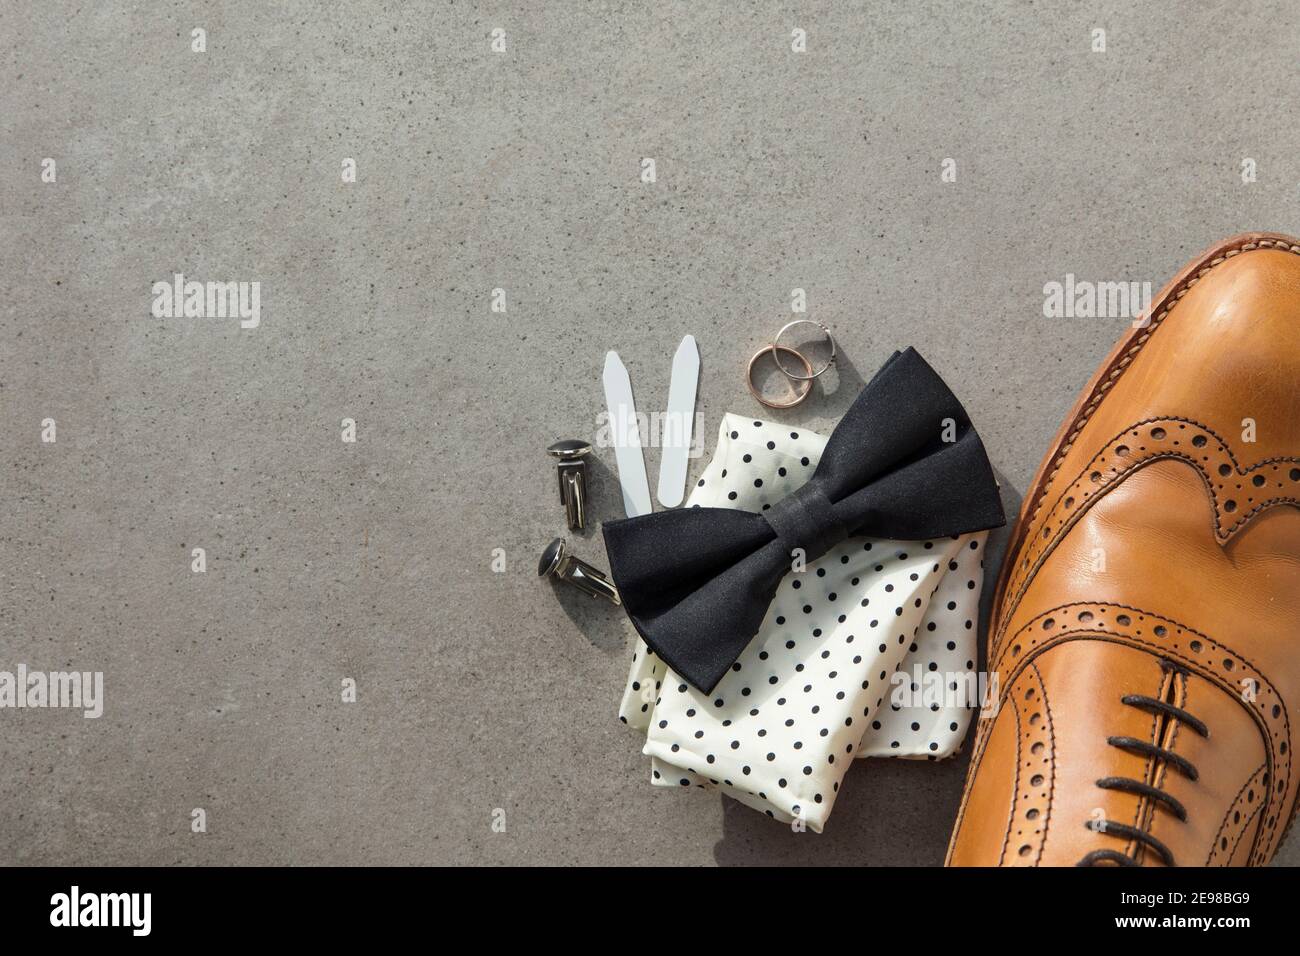 Bräutigam Hochzeitstag Vorbereitung. manschettenknöpfe, Schuh, Ringe und Fliege Hintergrund Stockfoto